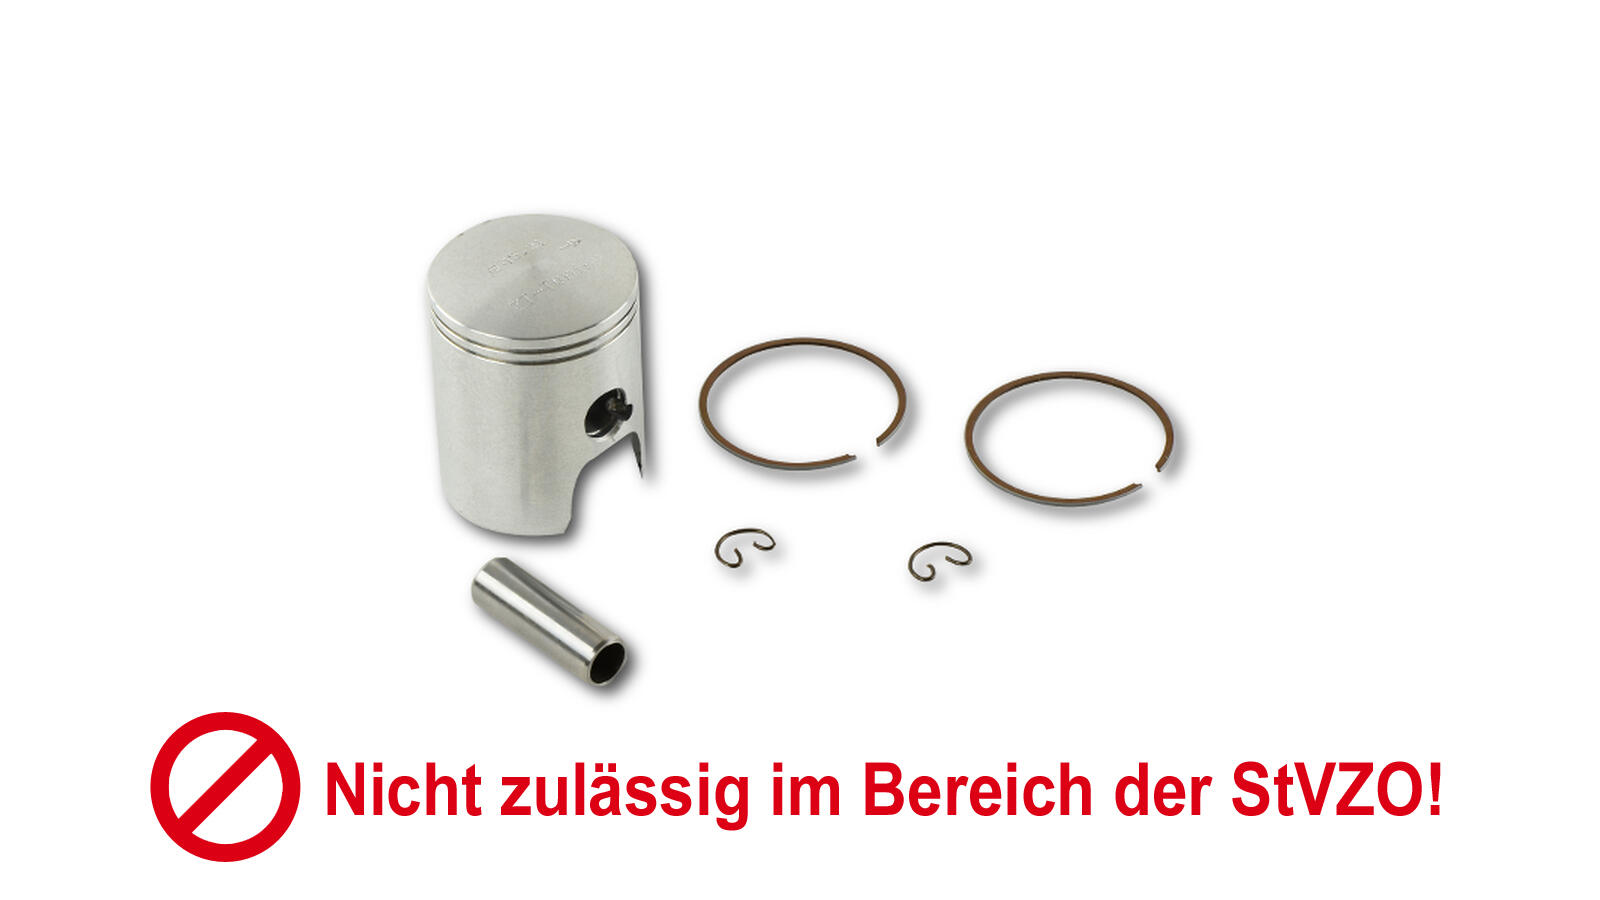 Dichtungssatz Schmitt mit Silikon Dichtung für S51, SR50, KR51/2, 8,50 €